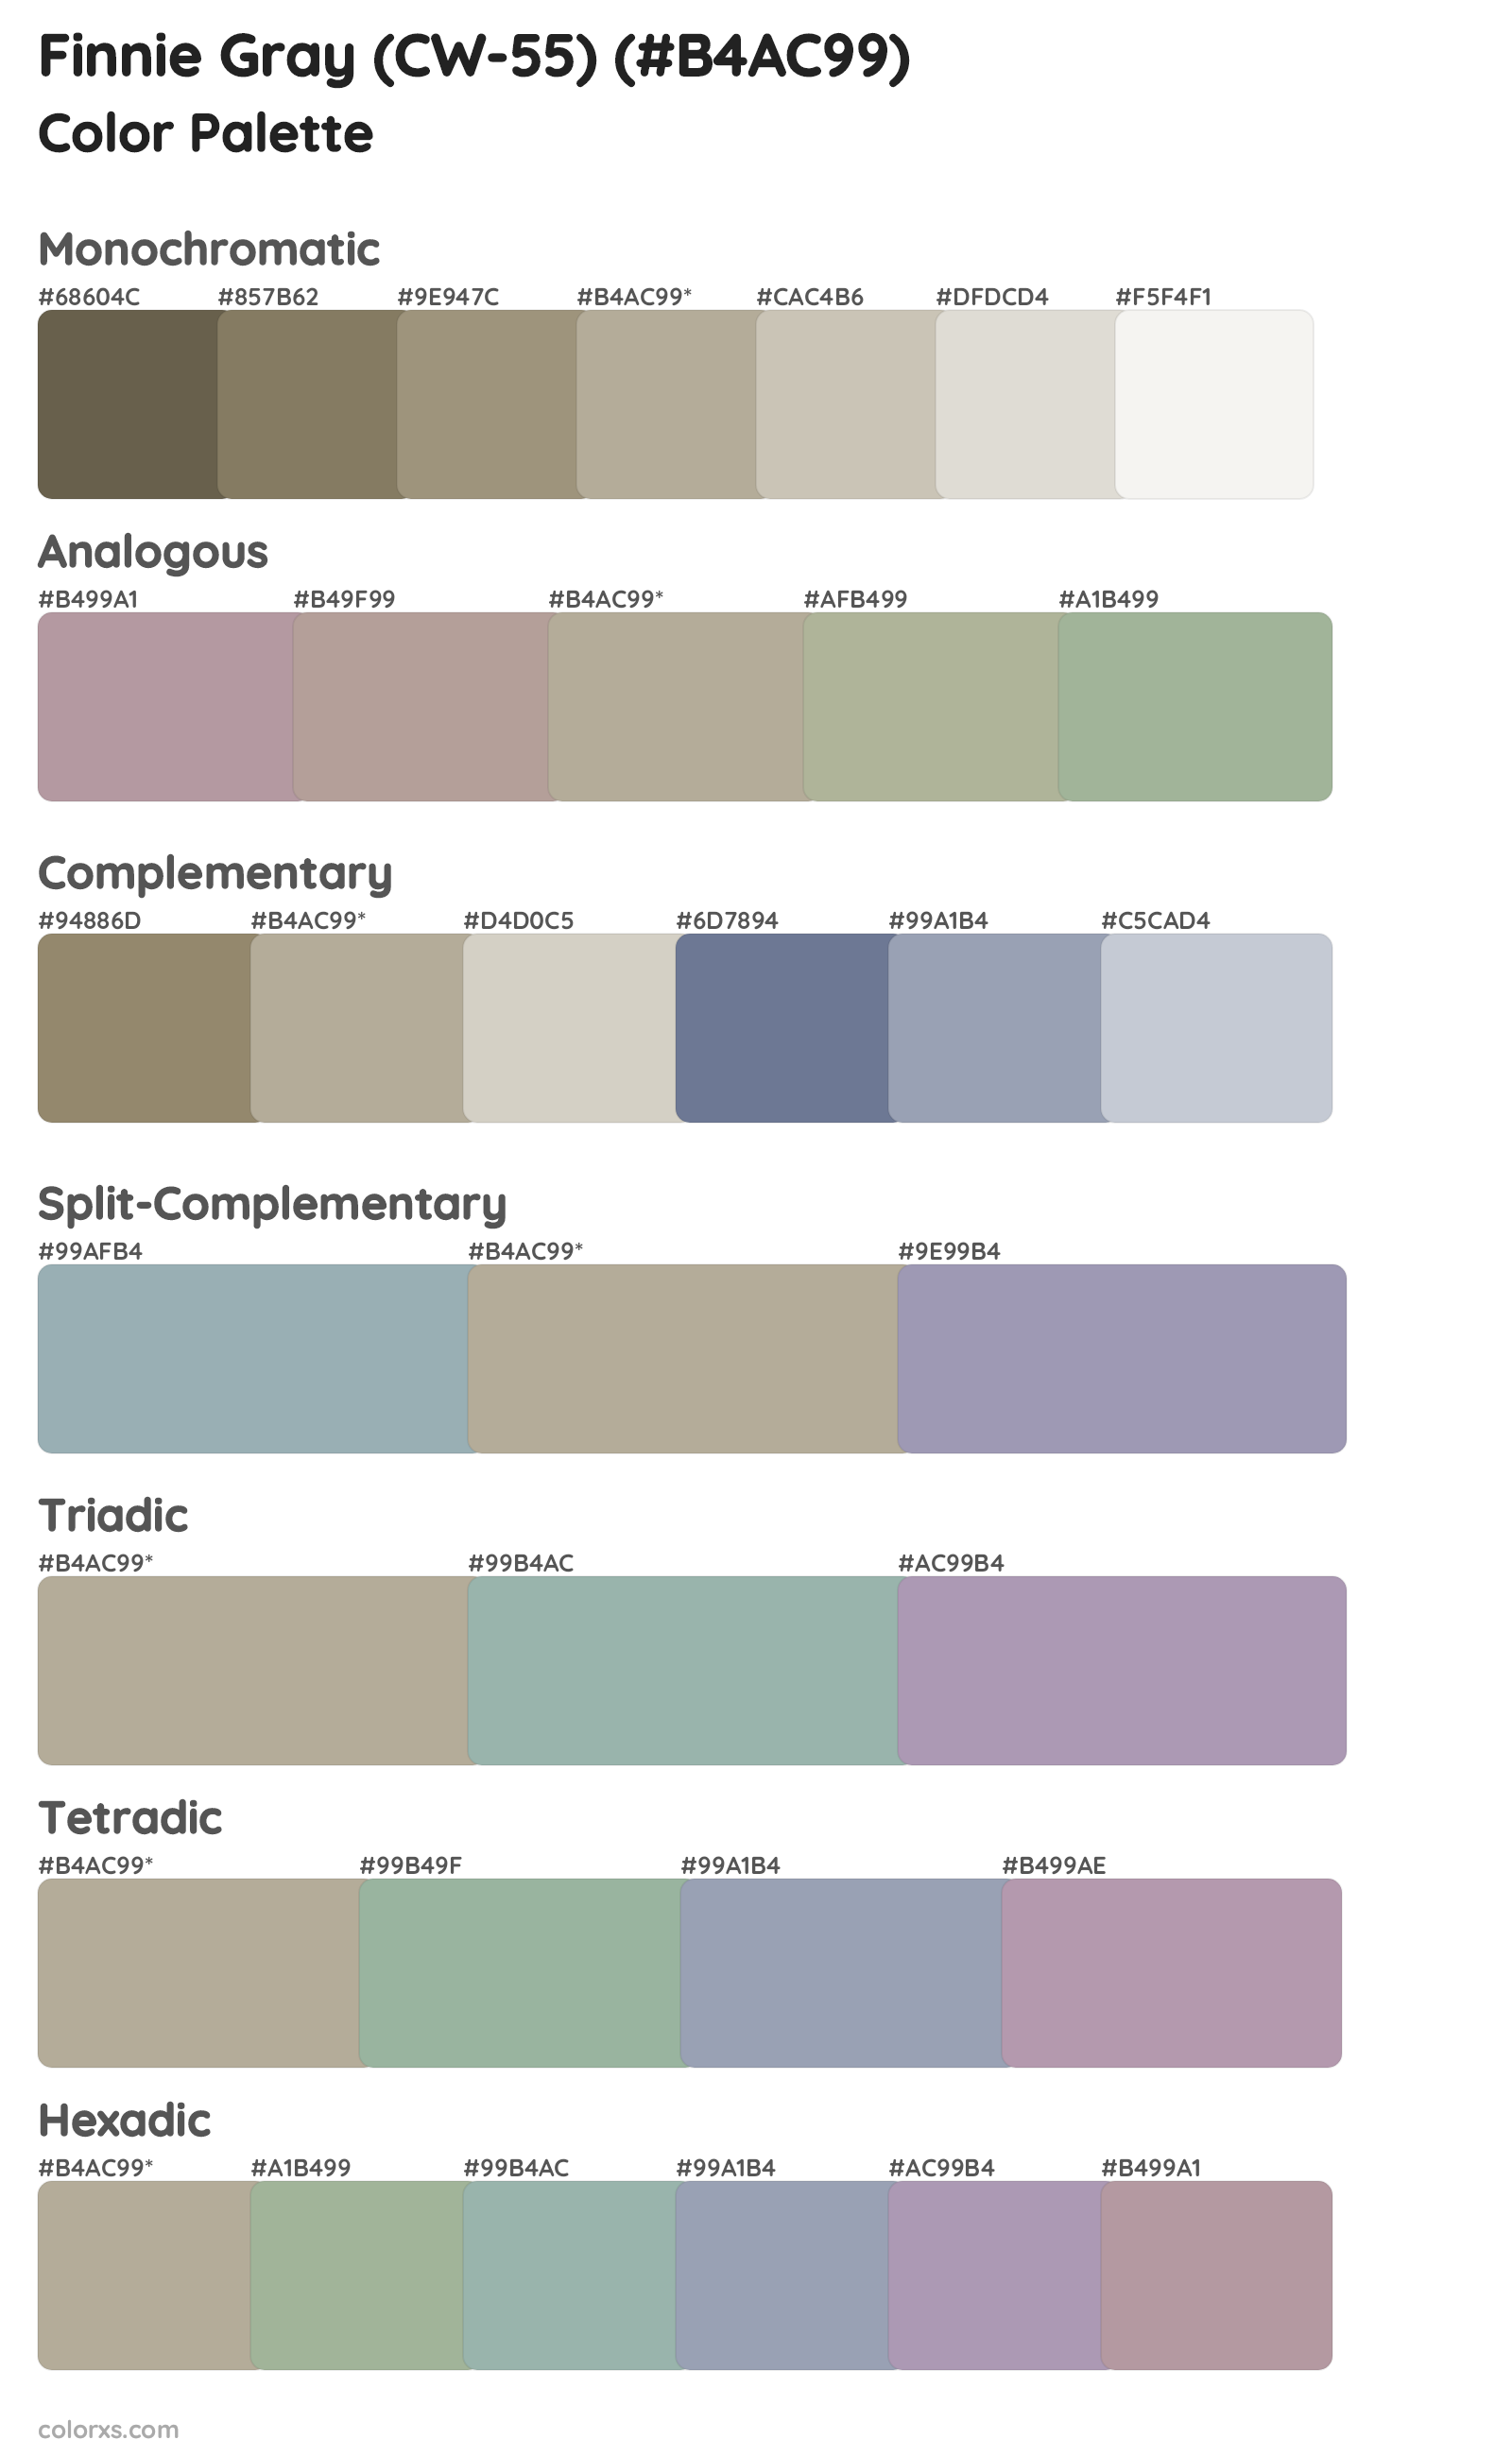 Finnie Gray (CW-55) Color Scheme Palettes